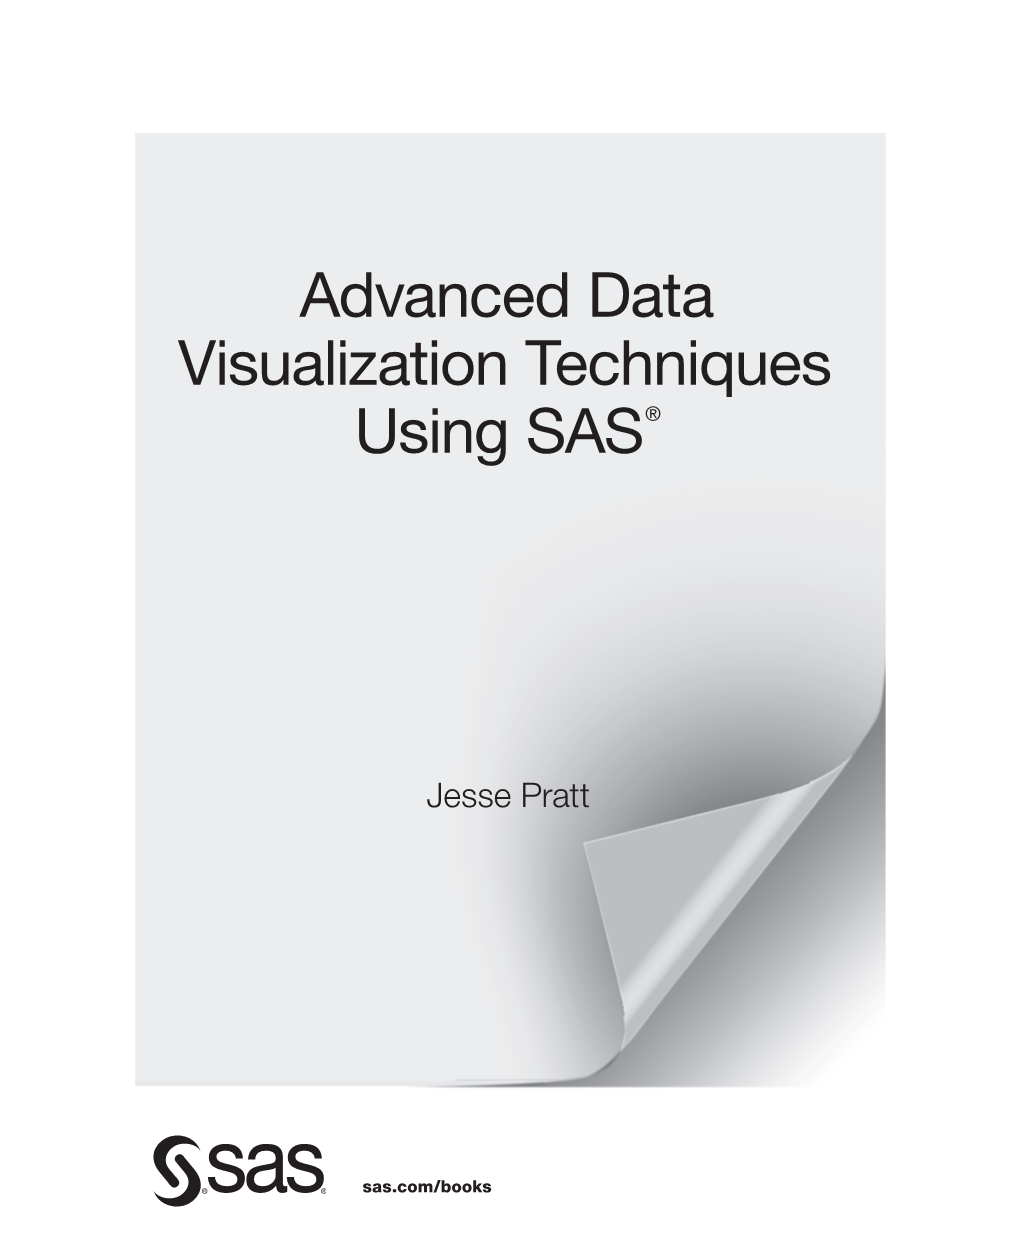 Advanced Data Visualization Techniques Using SAS®